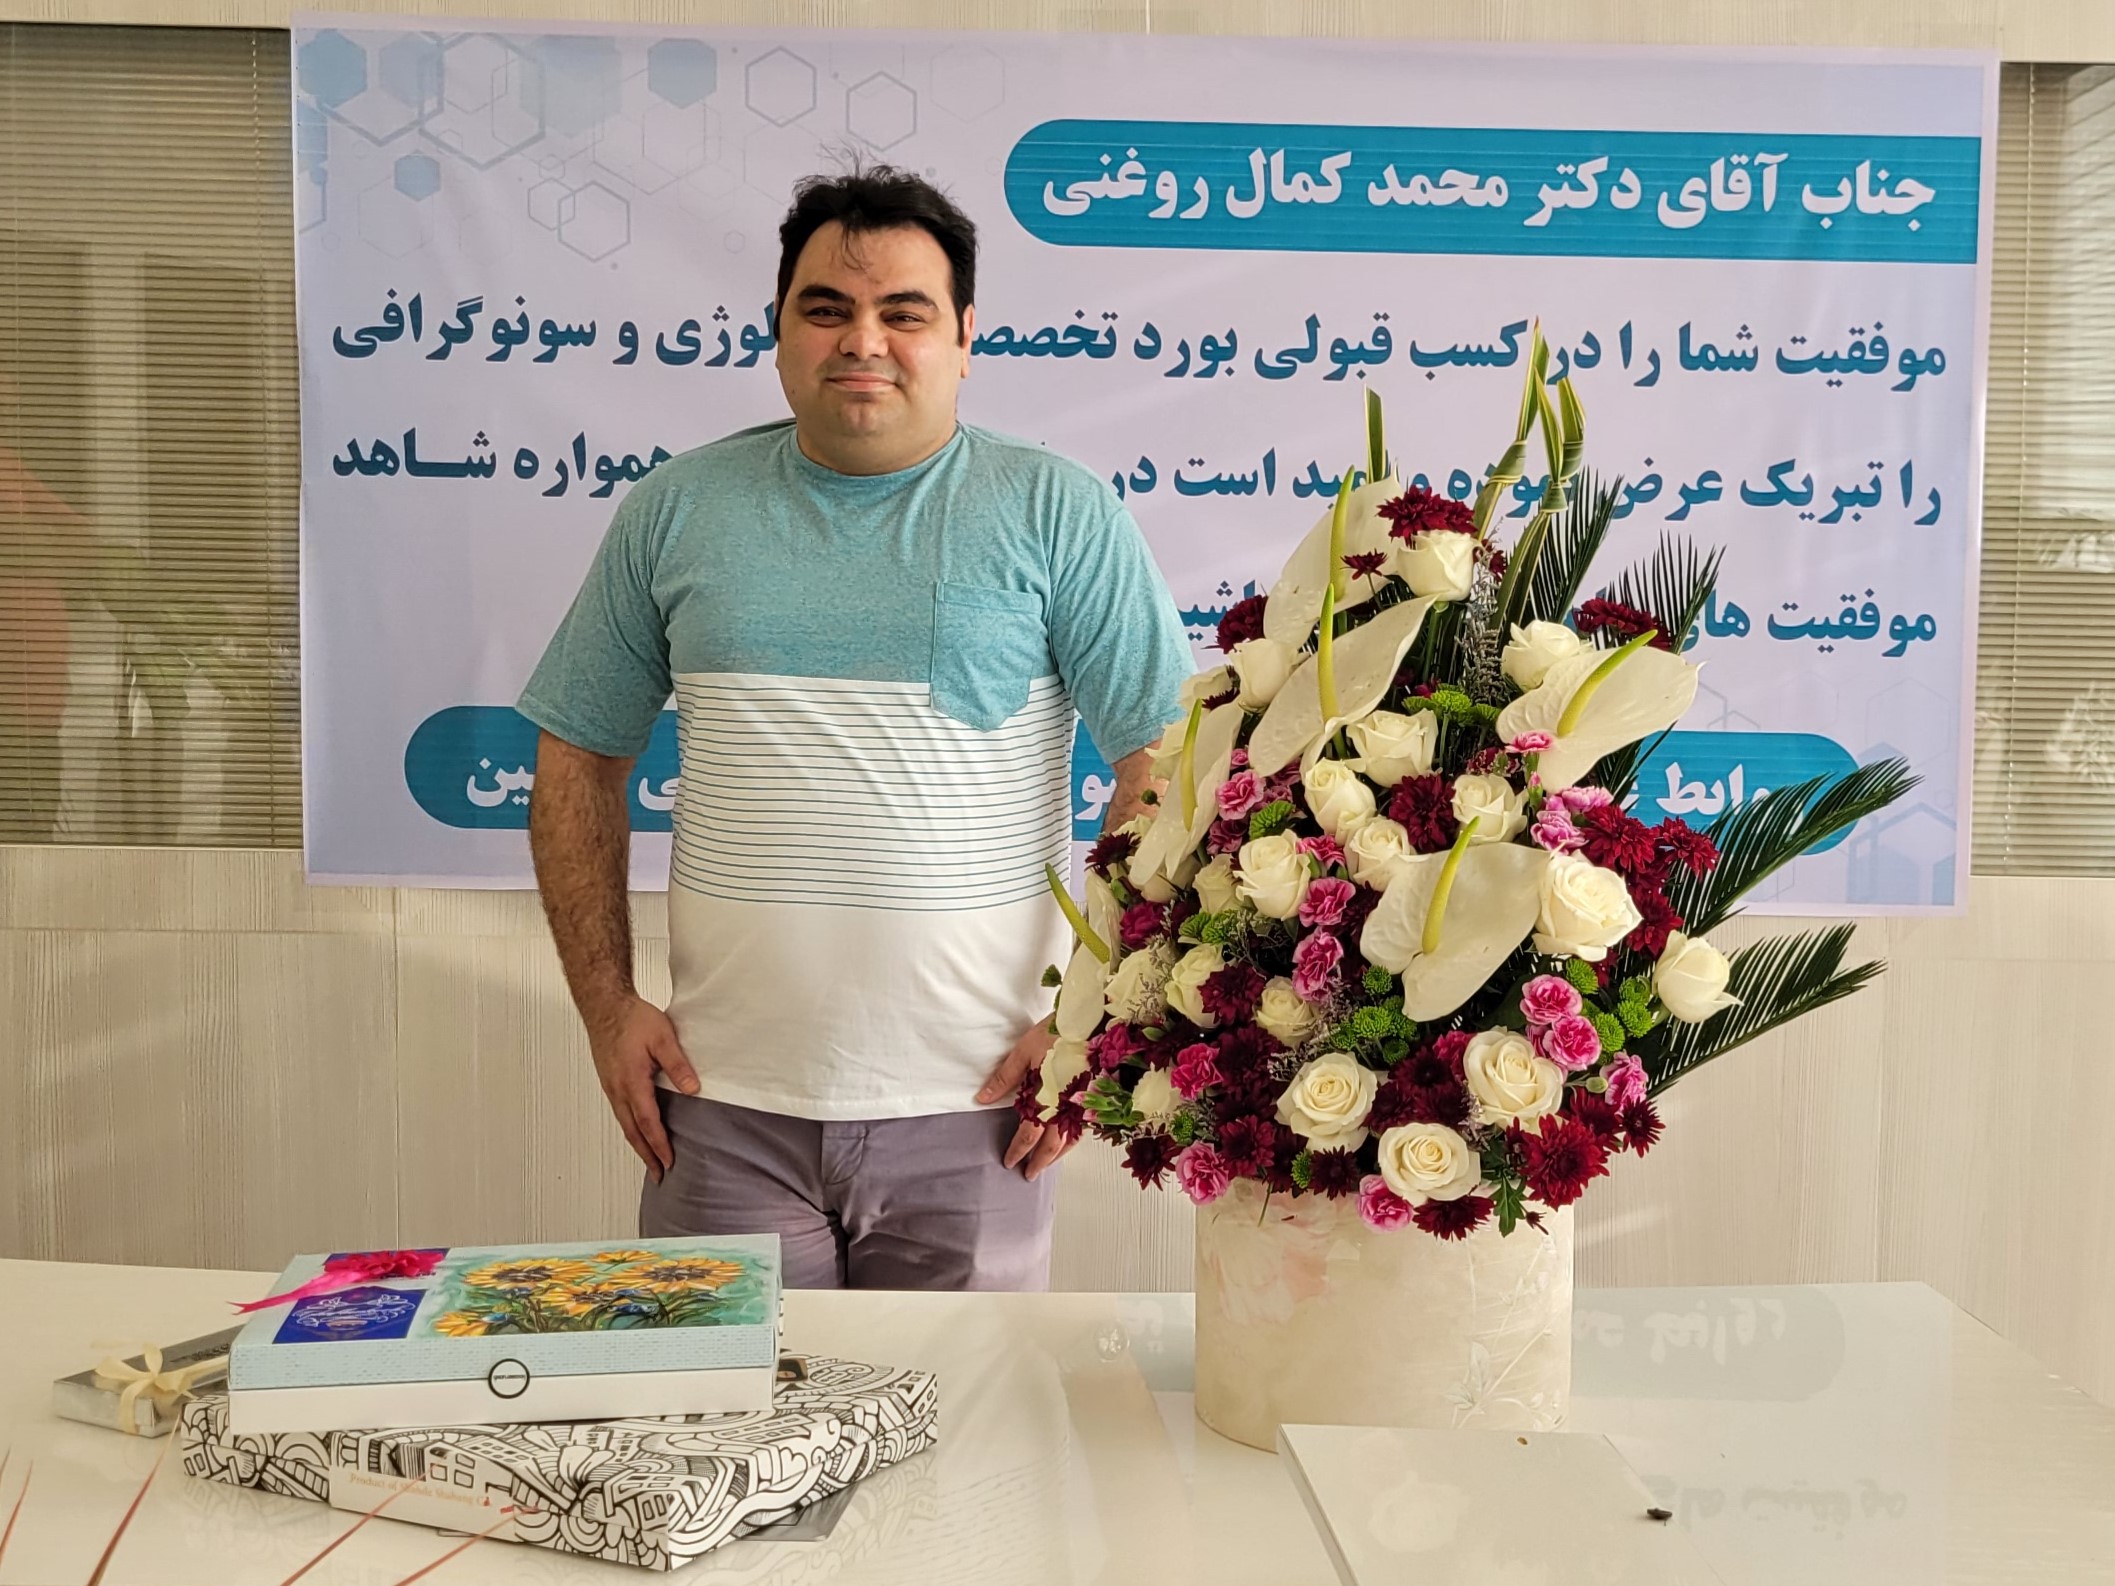 دکتر محمدکمال روغنی پزشک سونوگرافی اکسین موفق به کسب بورد تخصصی رادیولوژی و سونوگرافی در کشور شد